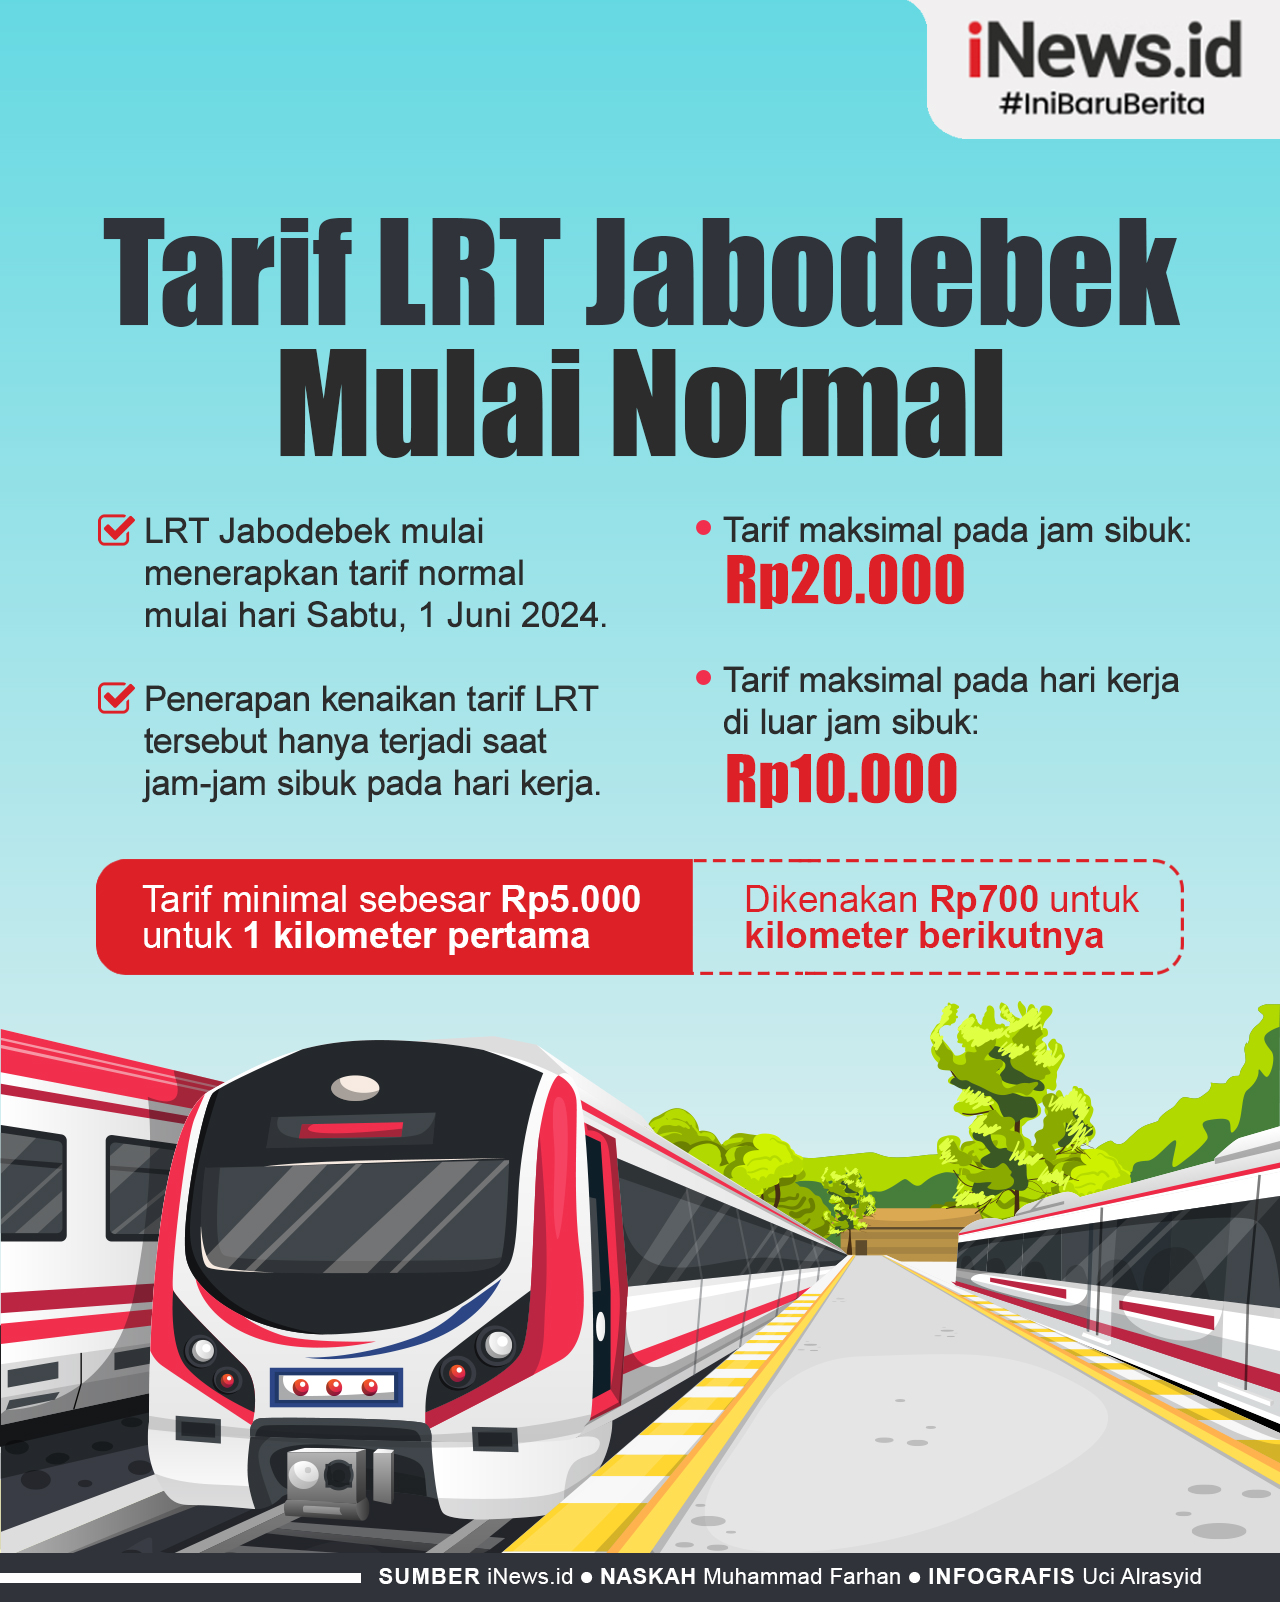 Infografis Tarif LRT Jabodebek Normal Mulai Hari Ini